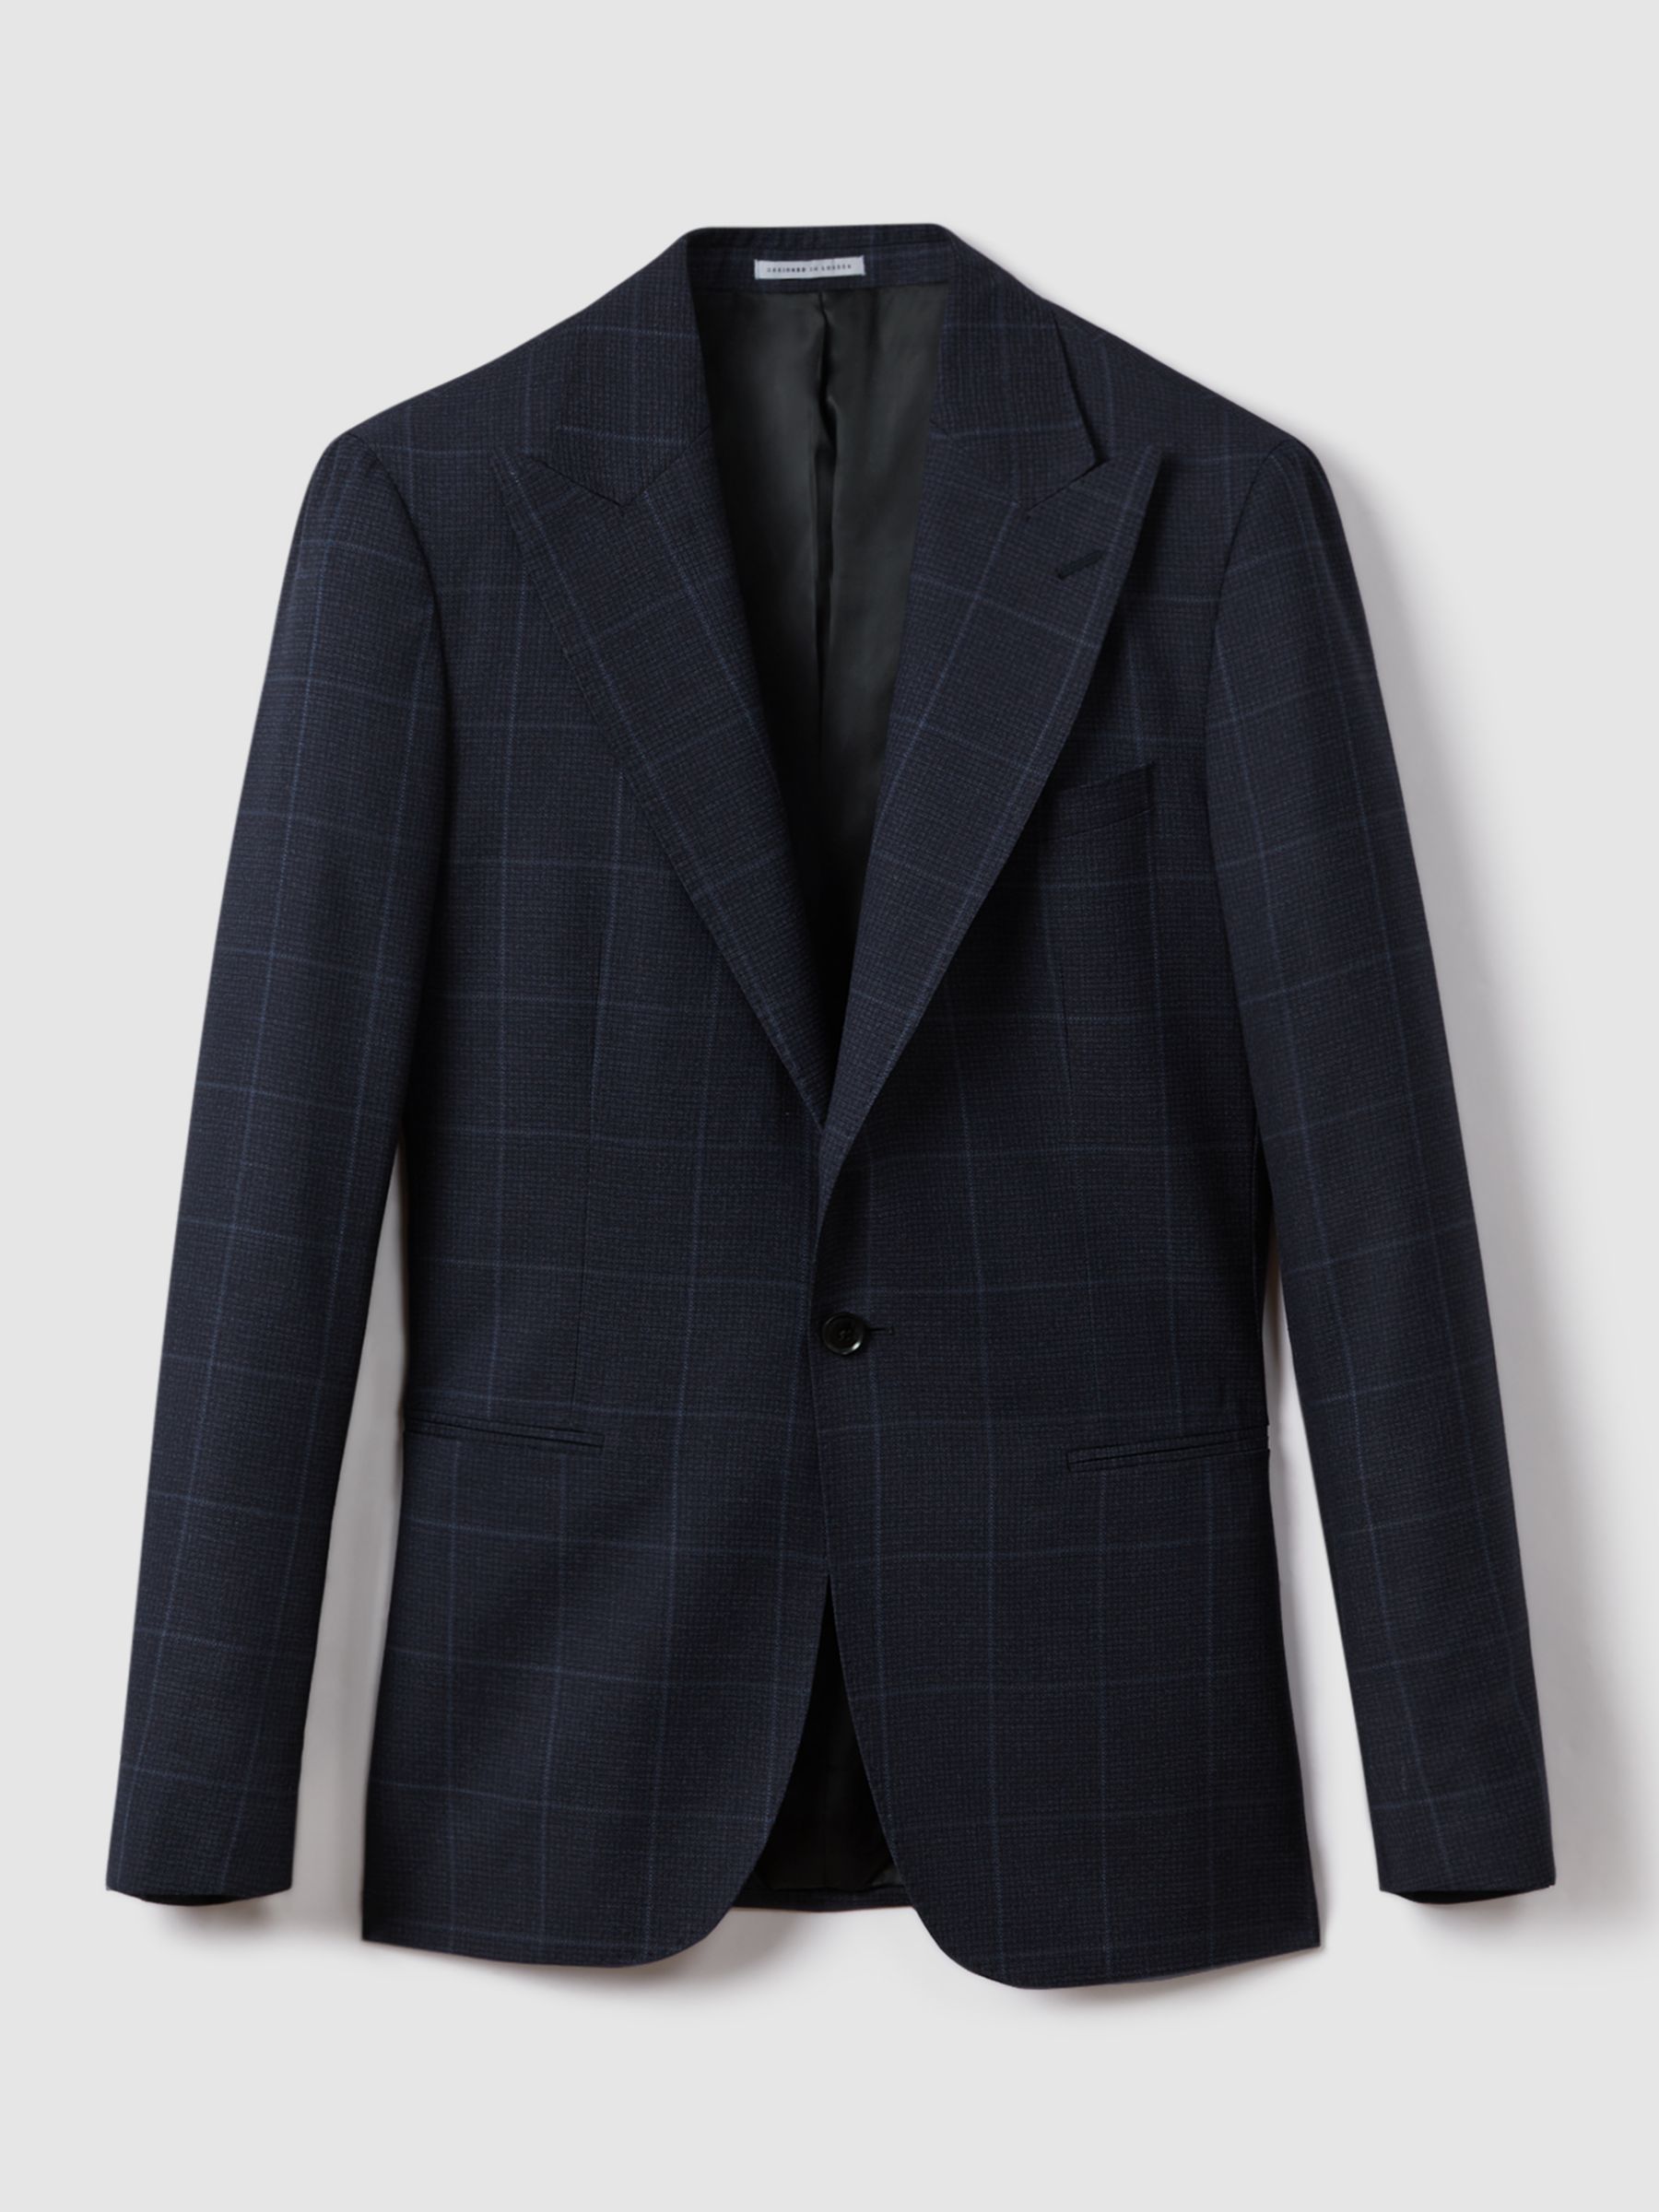 Buy Reiss Klink Check Wool Suit Jacket, Blue Online at johnlewis.com